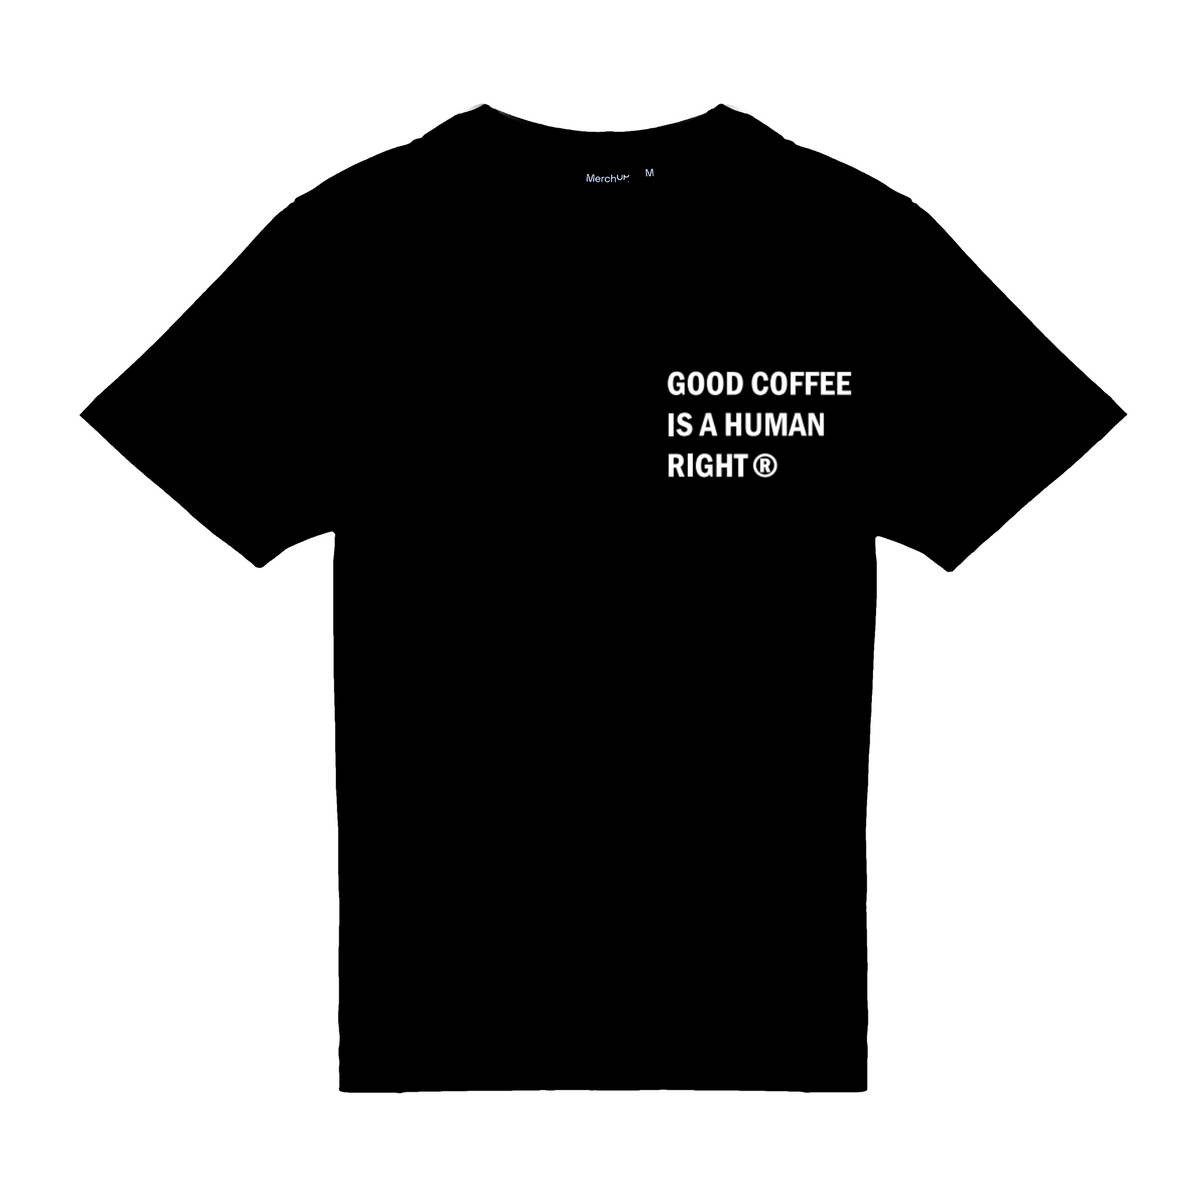 &lt;tc&gt;JAVA Coffee branded T-shirt&lt;/tc&gt;